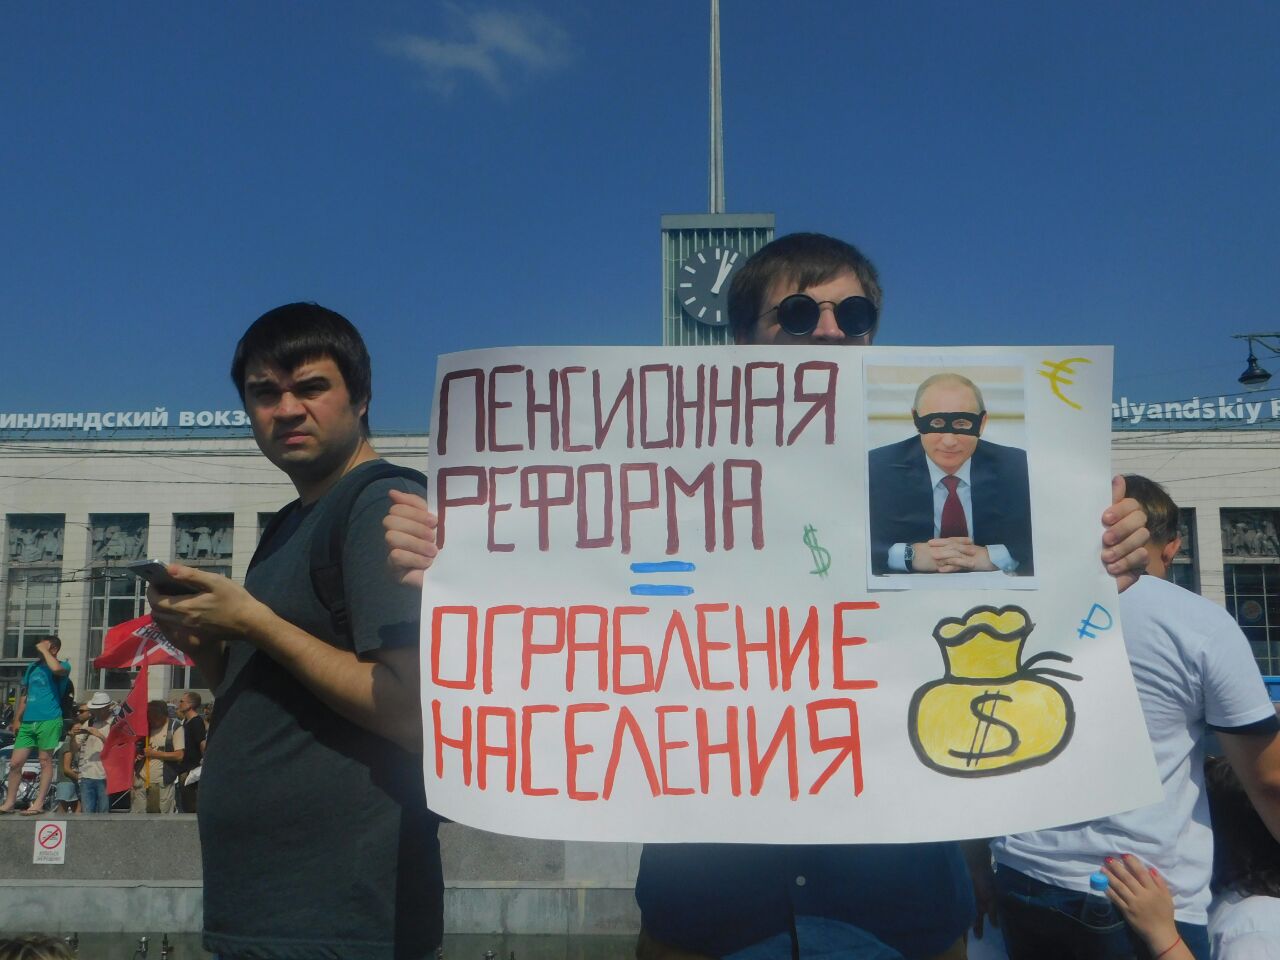 Петербургские оппозиционеры договорились о дате митинга против пенсионной реформы